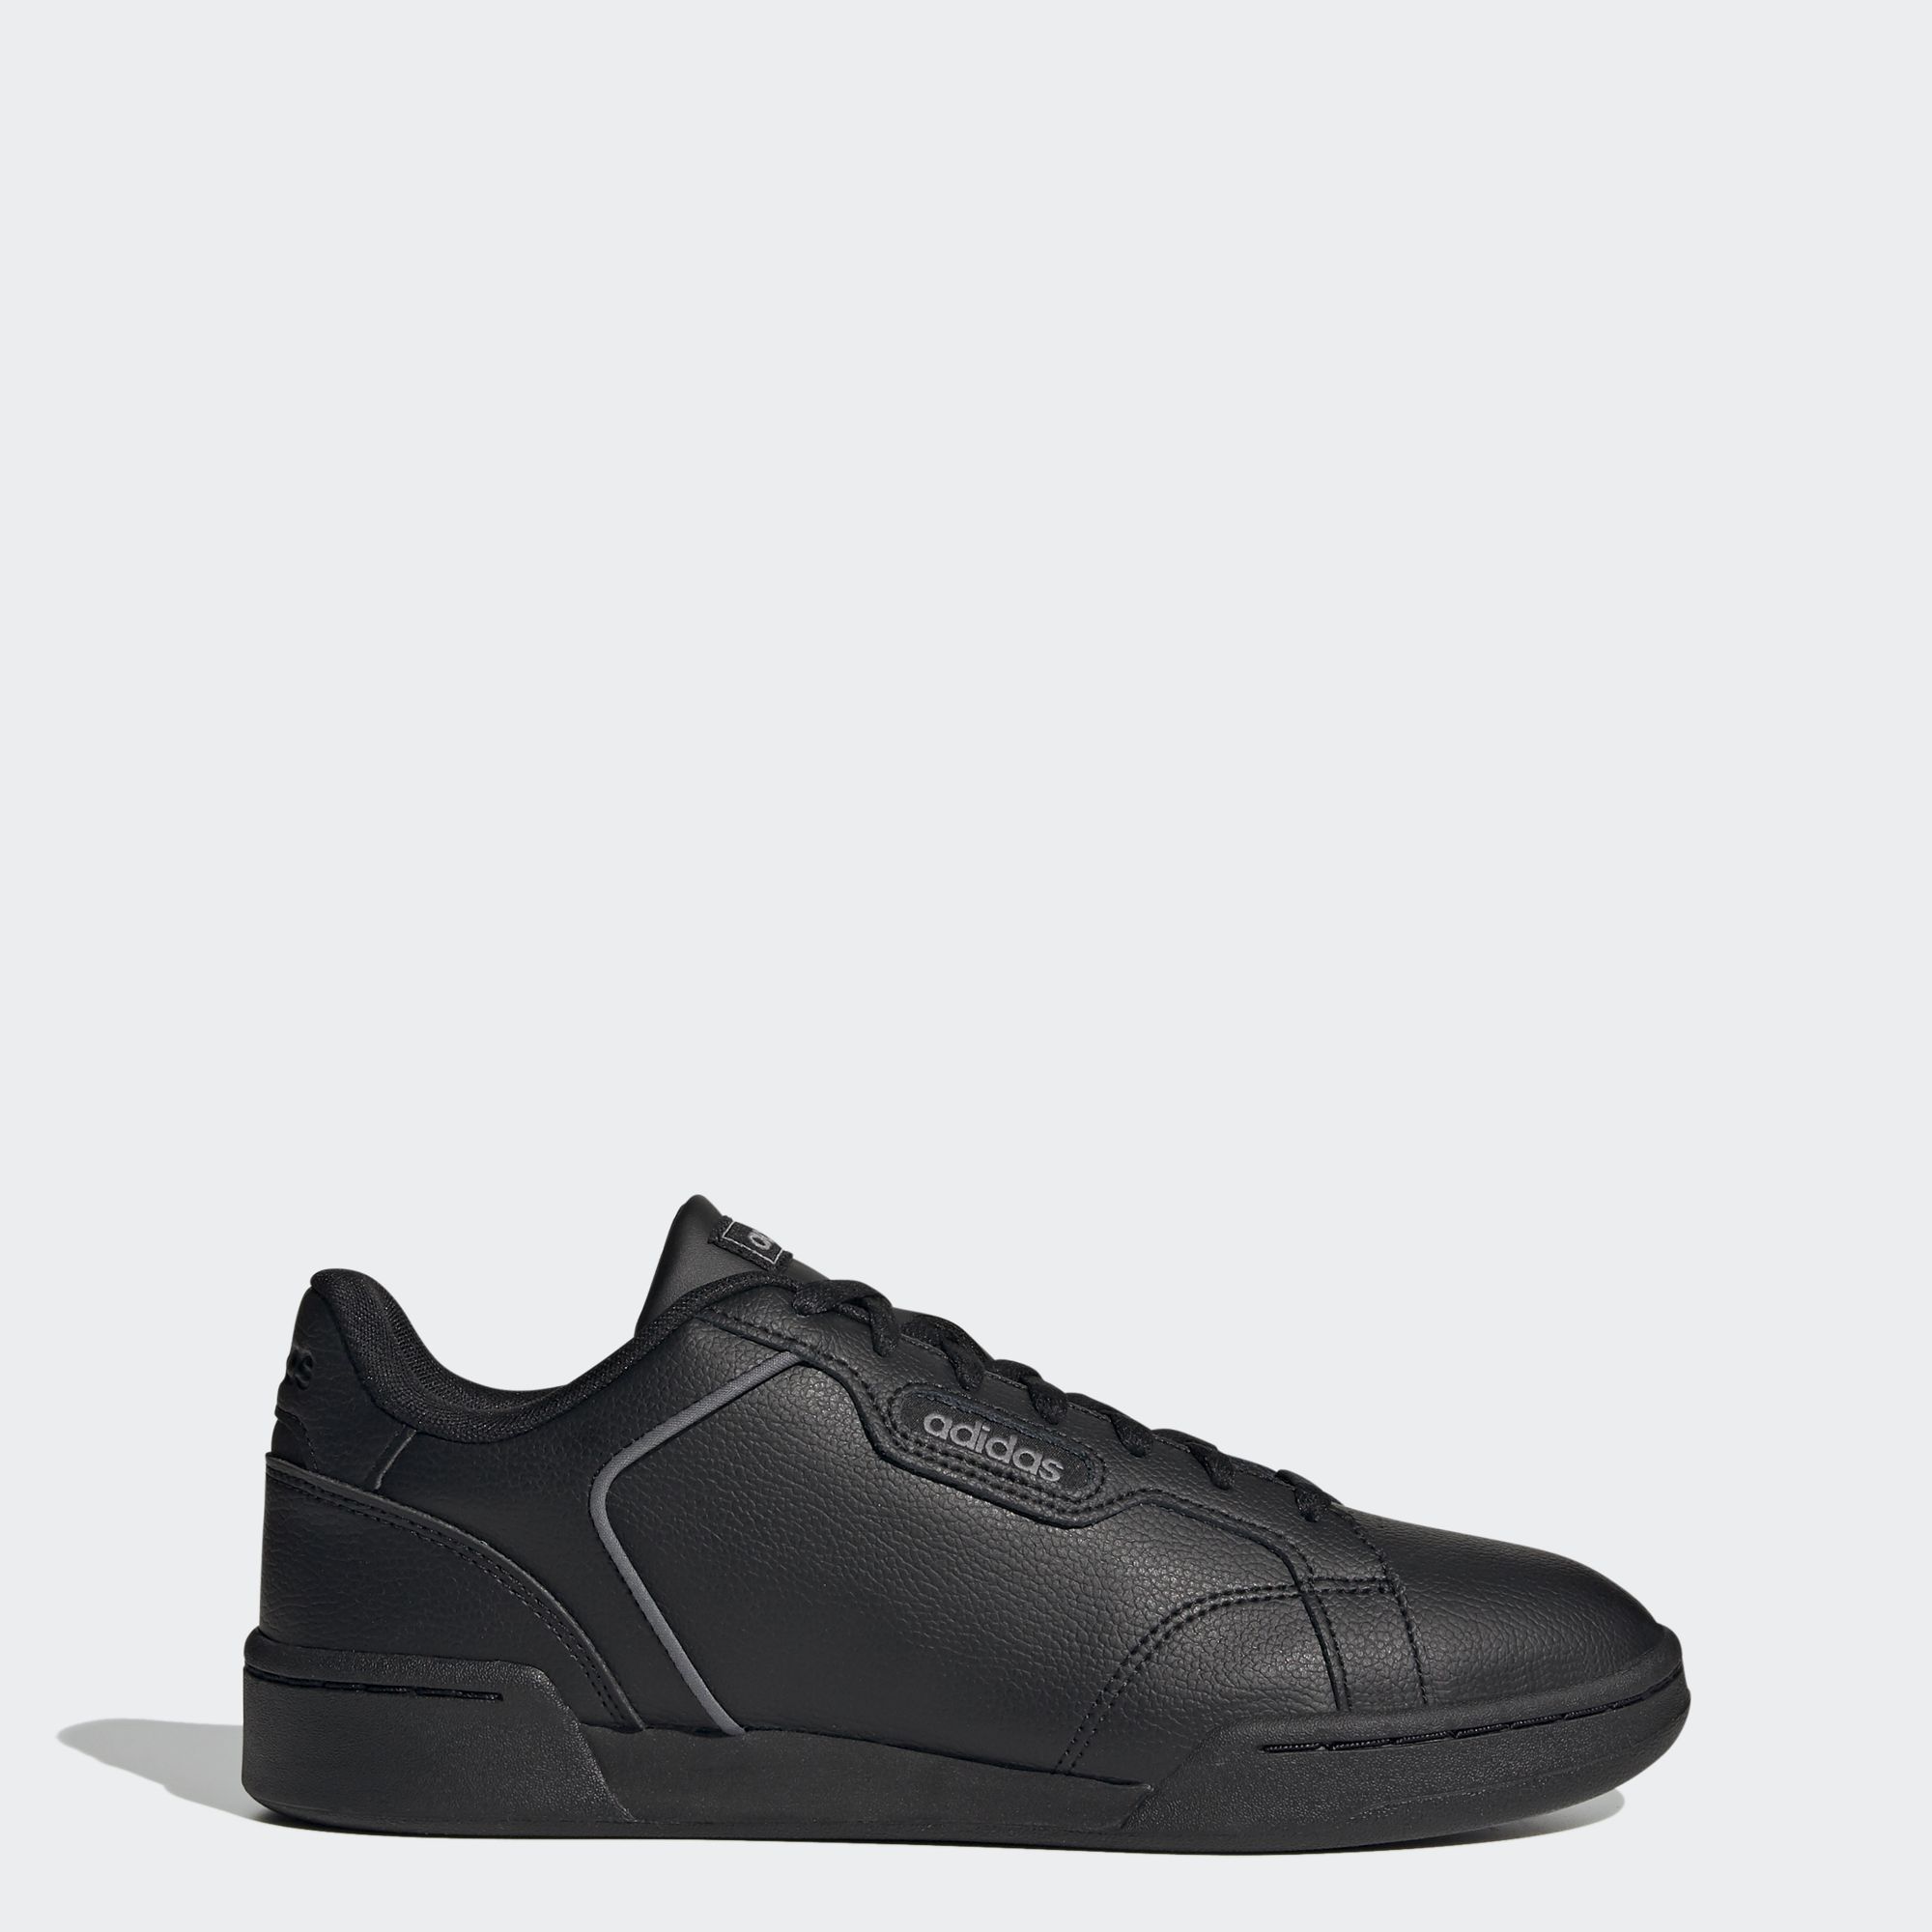 adidas TRAINING รองเท้า Roguera ผู้ชาย สีดำ EG2659